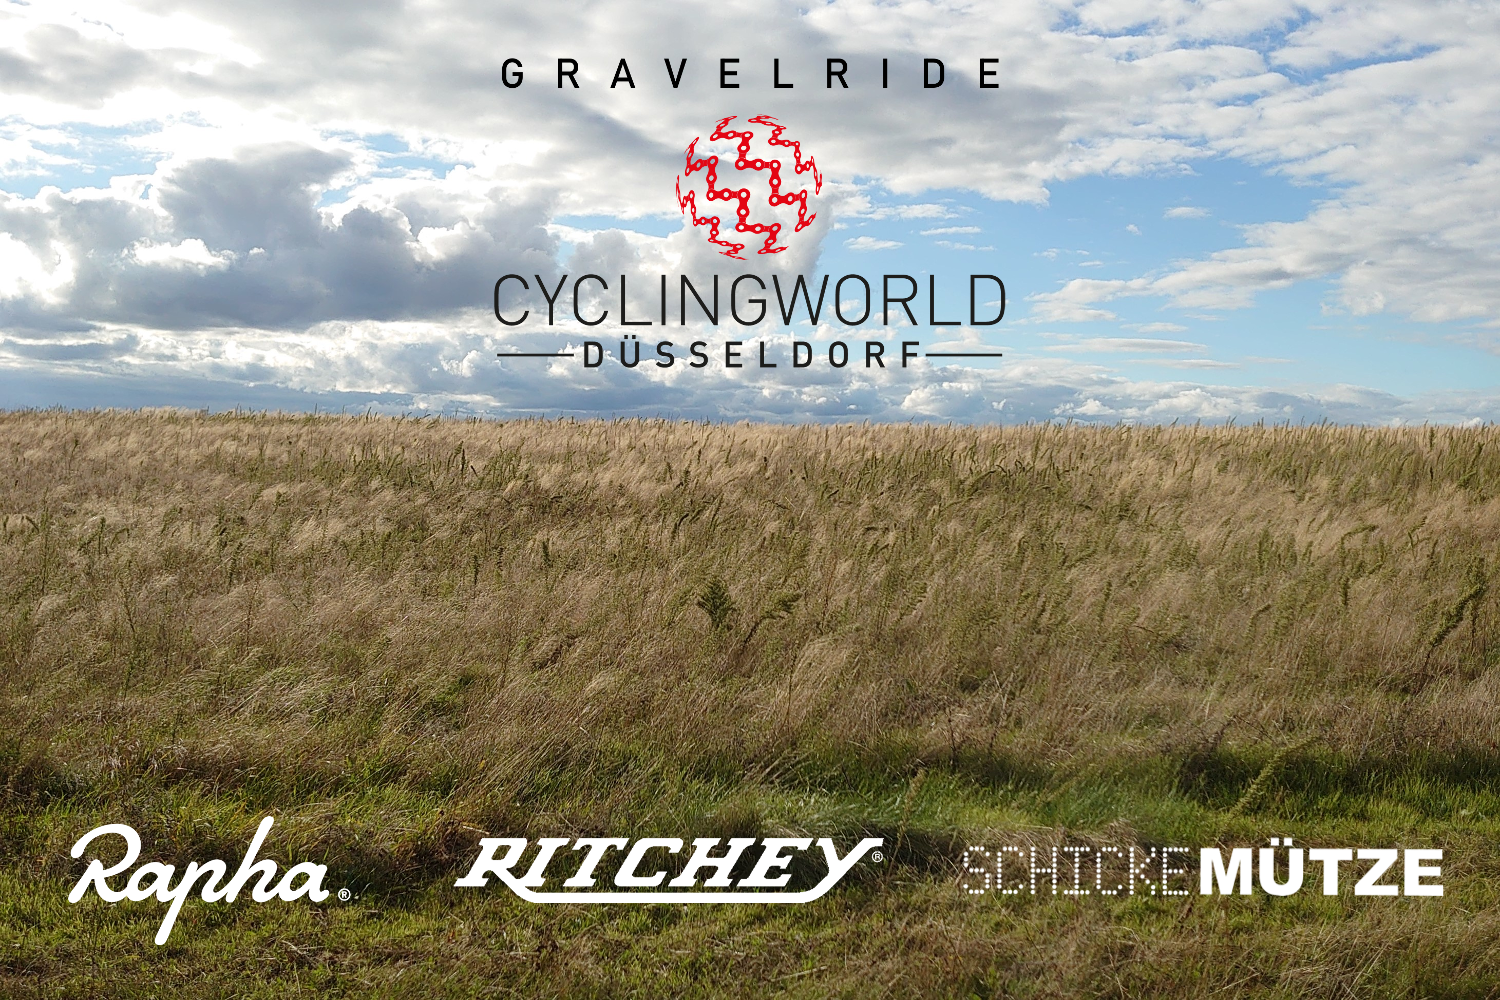 Miete dir ein hochwertiges Rennrad für Rapha X Ritchey X Schicke Mütze Gravel Ride
